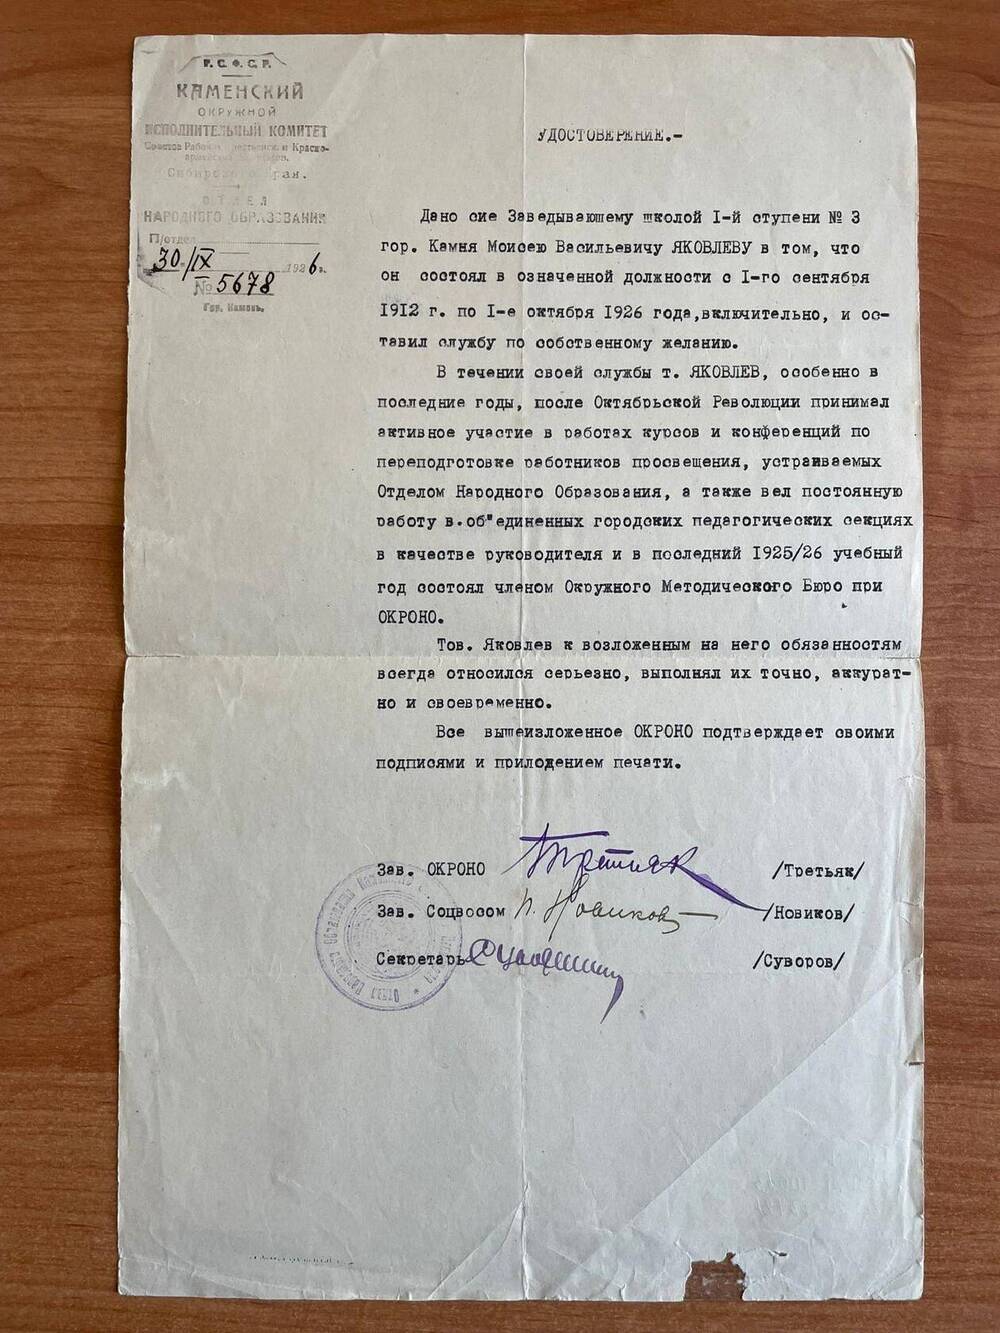 Удостоверение №5678 от 30.09.1926 года в том, что Яковлев Моисей Васильевич, заведующий школой I ступени №3 г.Камня, состоял в означенной должности с 1 сентября 1912 года по 1 октября 1926 года и оставил службу по собственному желанию.